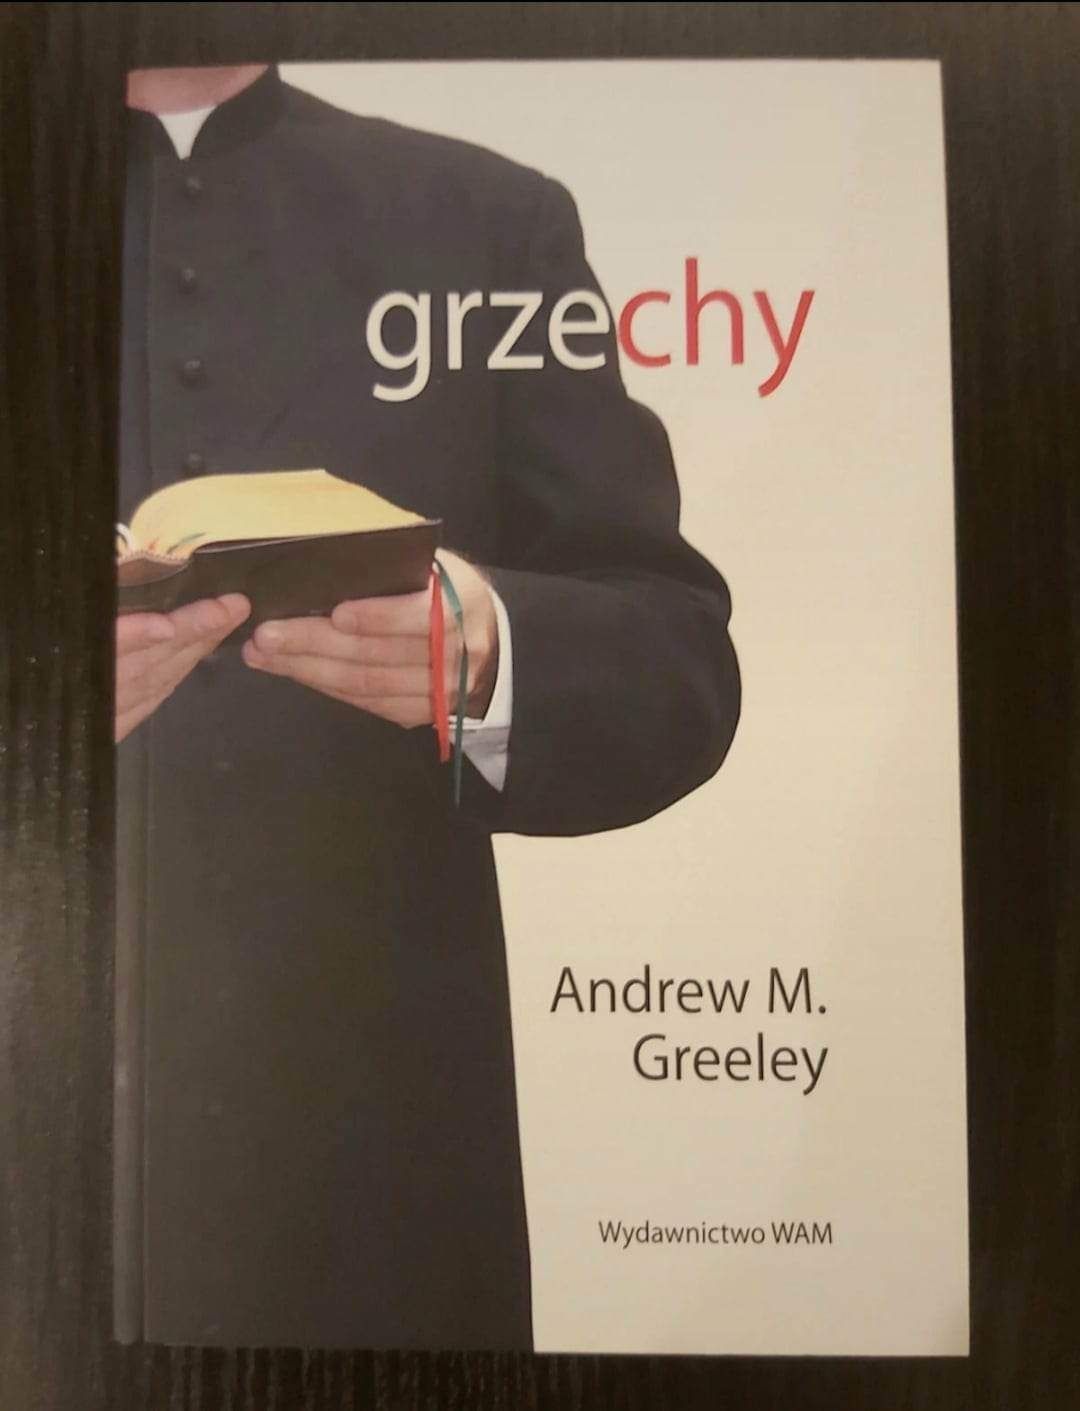 Książka "Grzechy" Andrew M. Greeley